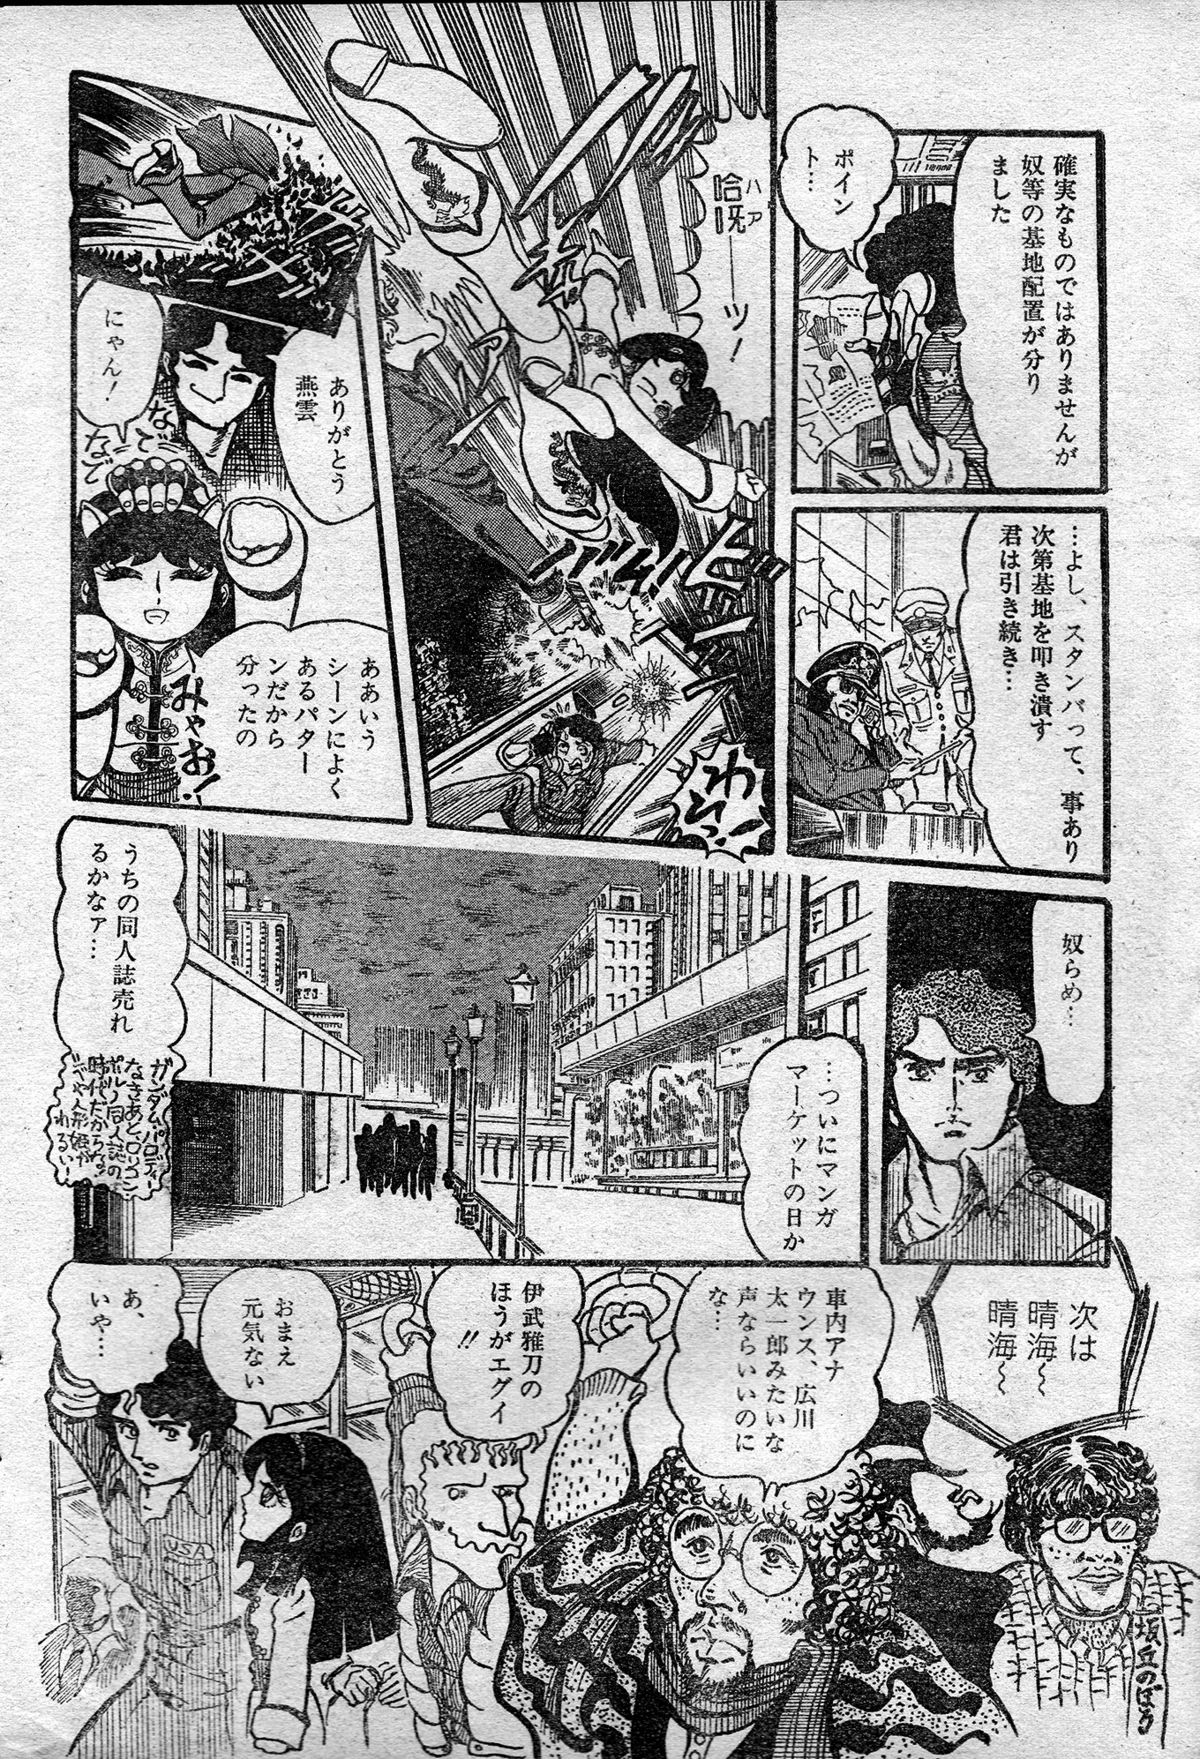 [破李拳竜] 撃殺!宇宙拳 第一章 (レモンピープル #2, 1982年3月)